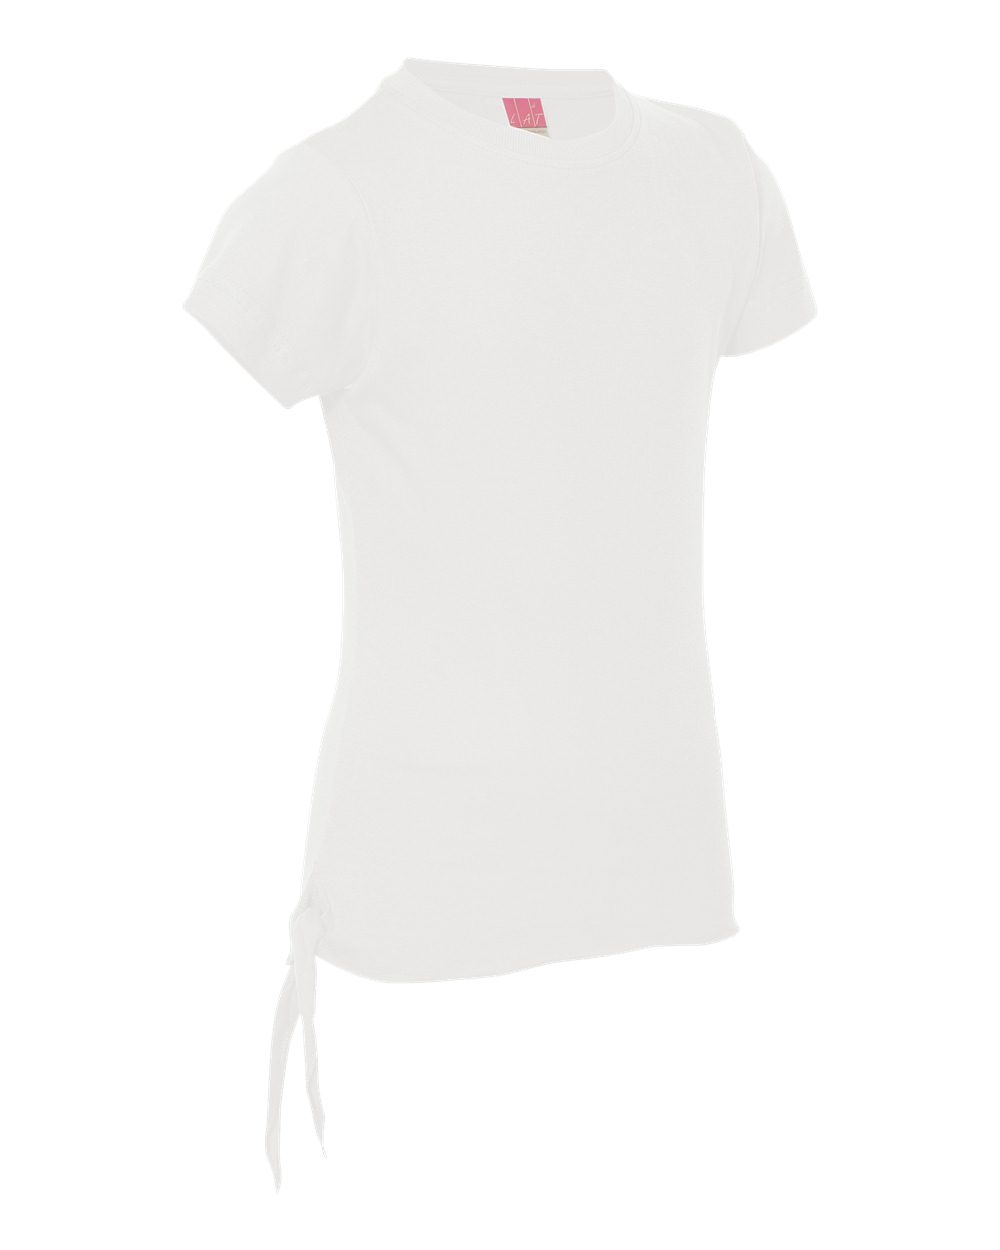 LAT 2625 - Girls' Fine Jersey Side-Tie T-Shirt